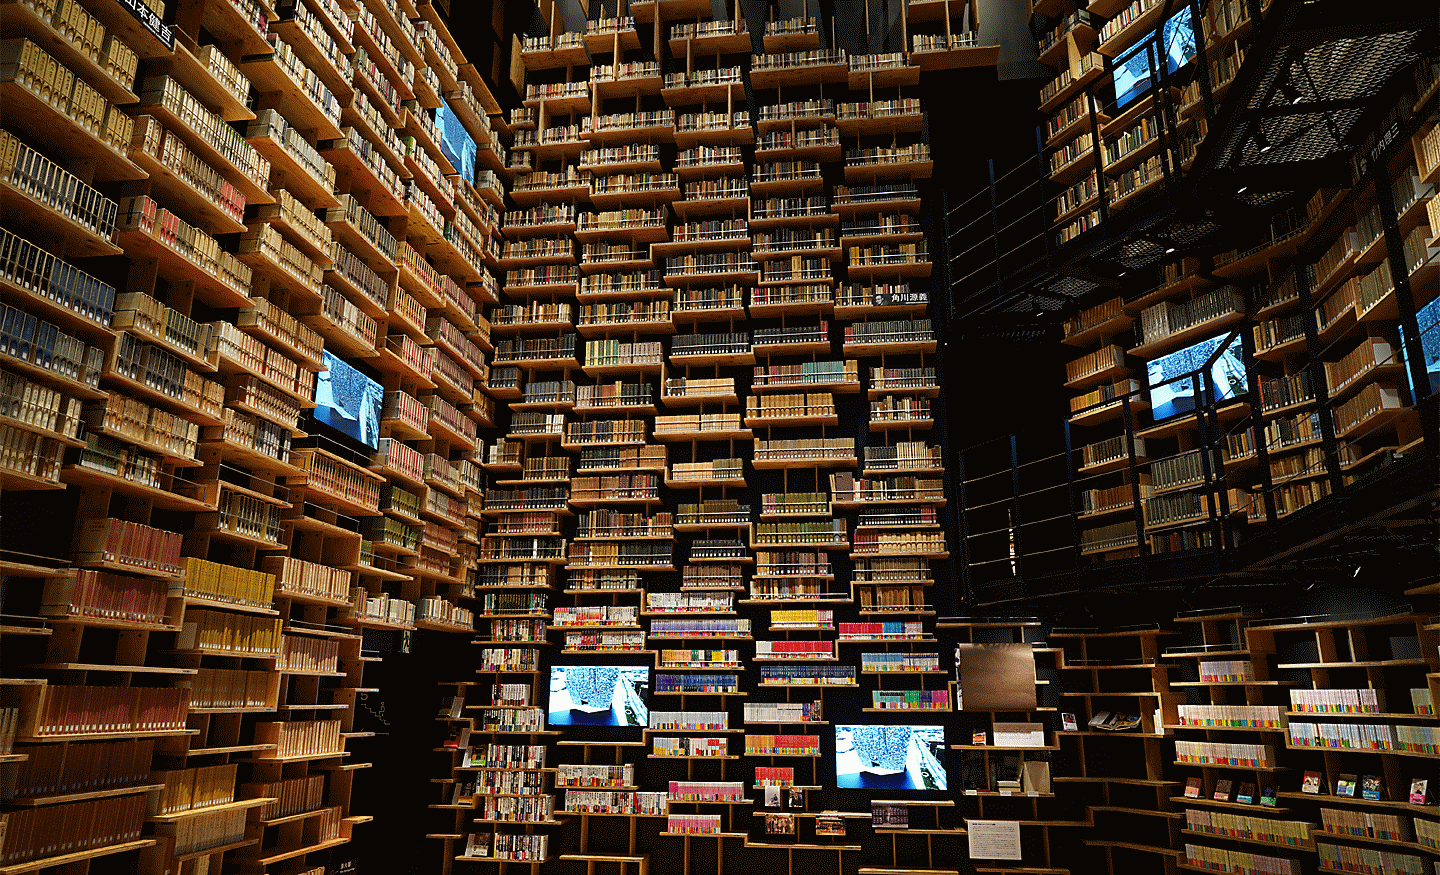 Intérieur d'une bibliothèque capturé à l'aide de l'objectif, avec une haute résolution dans tous les coins de l'image